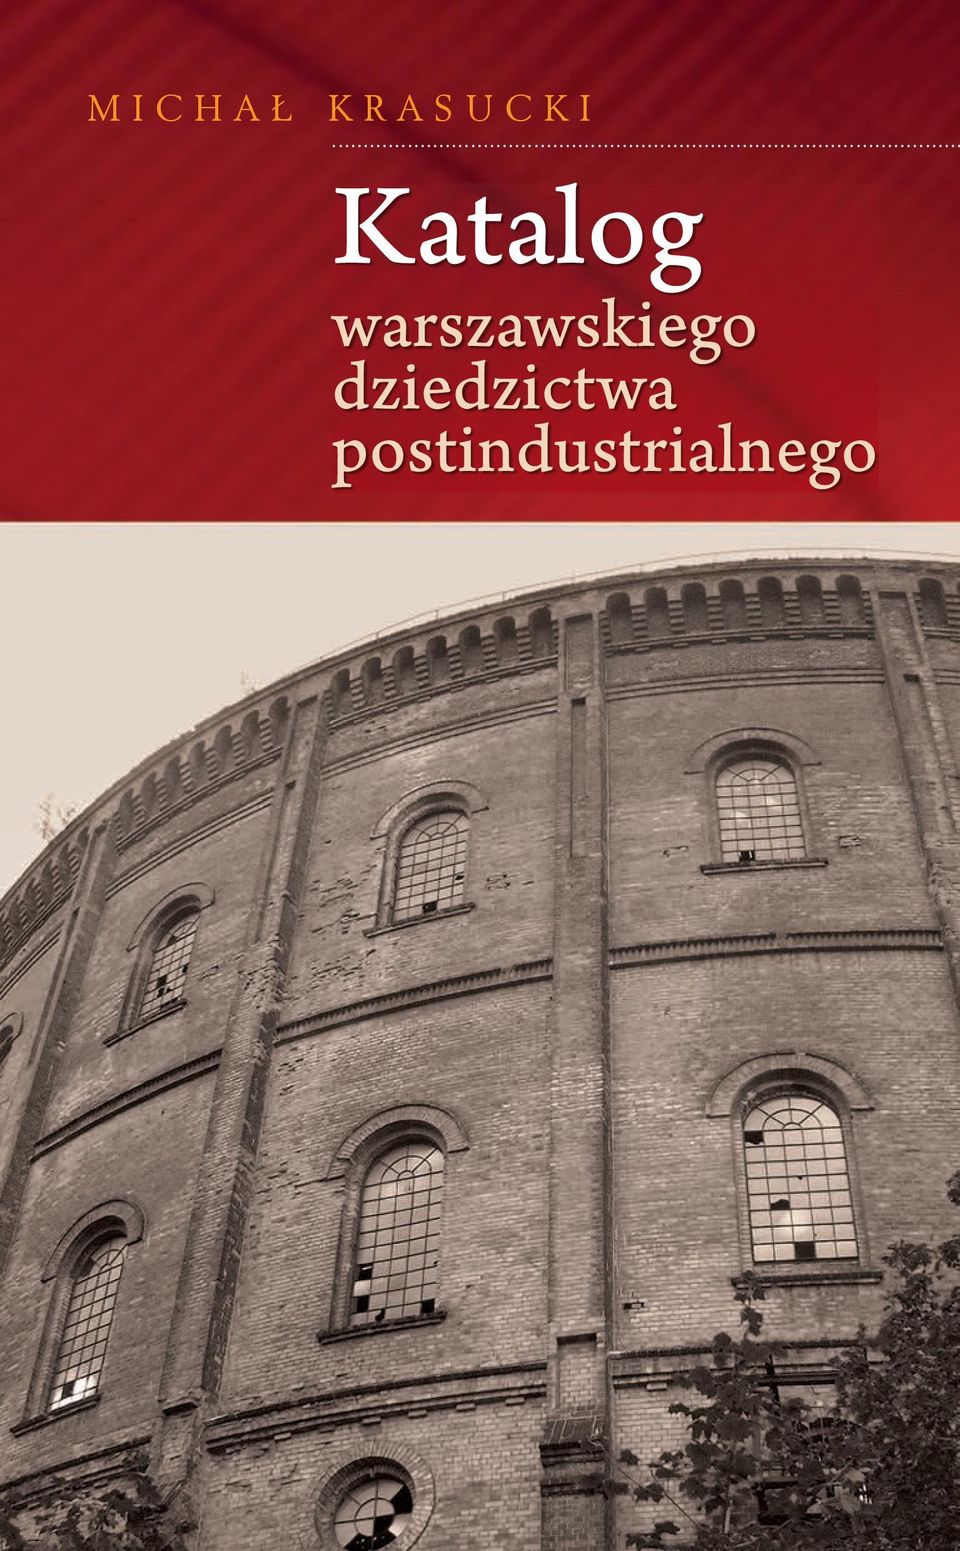 warszawskiego